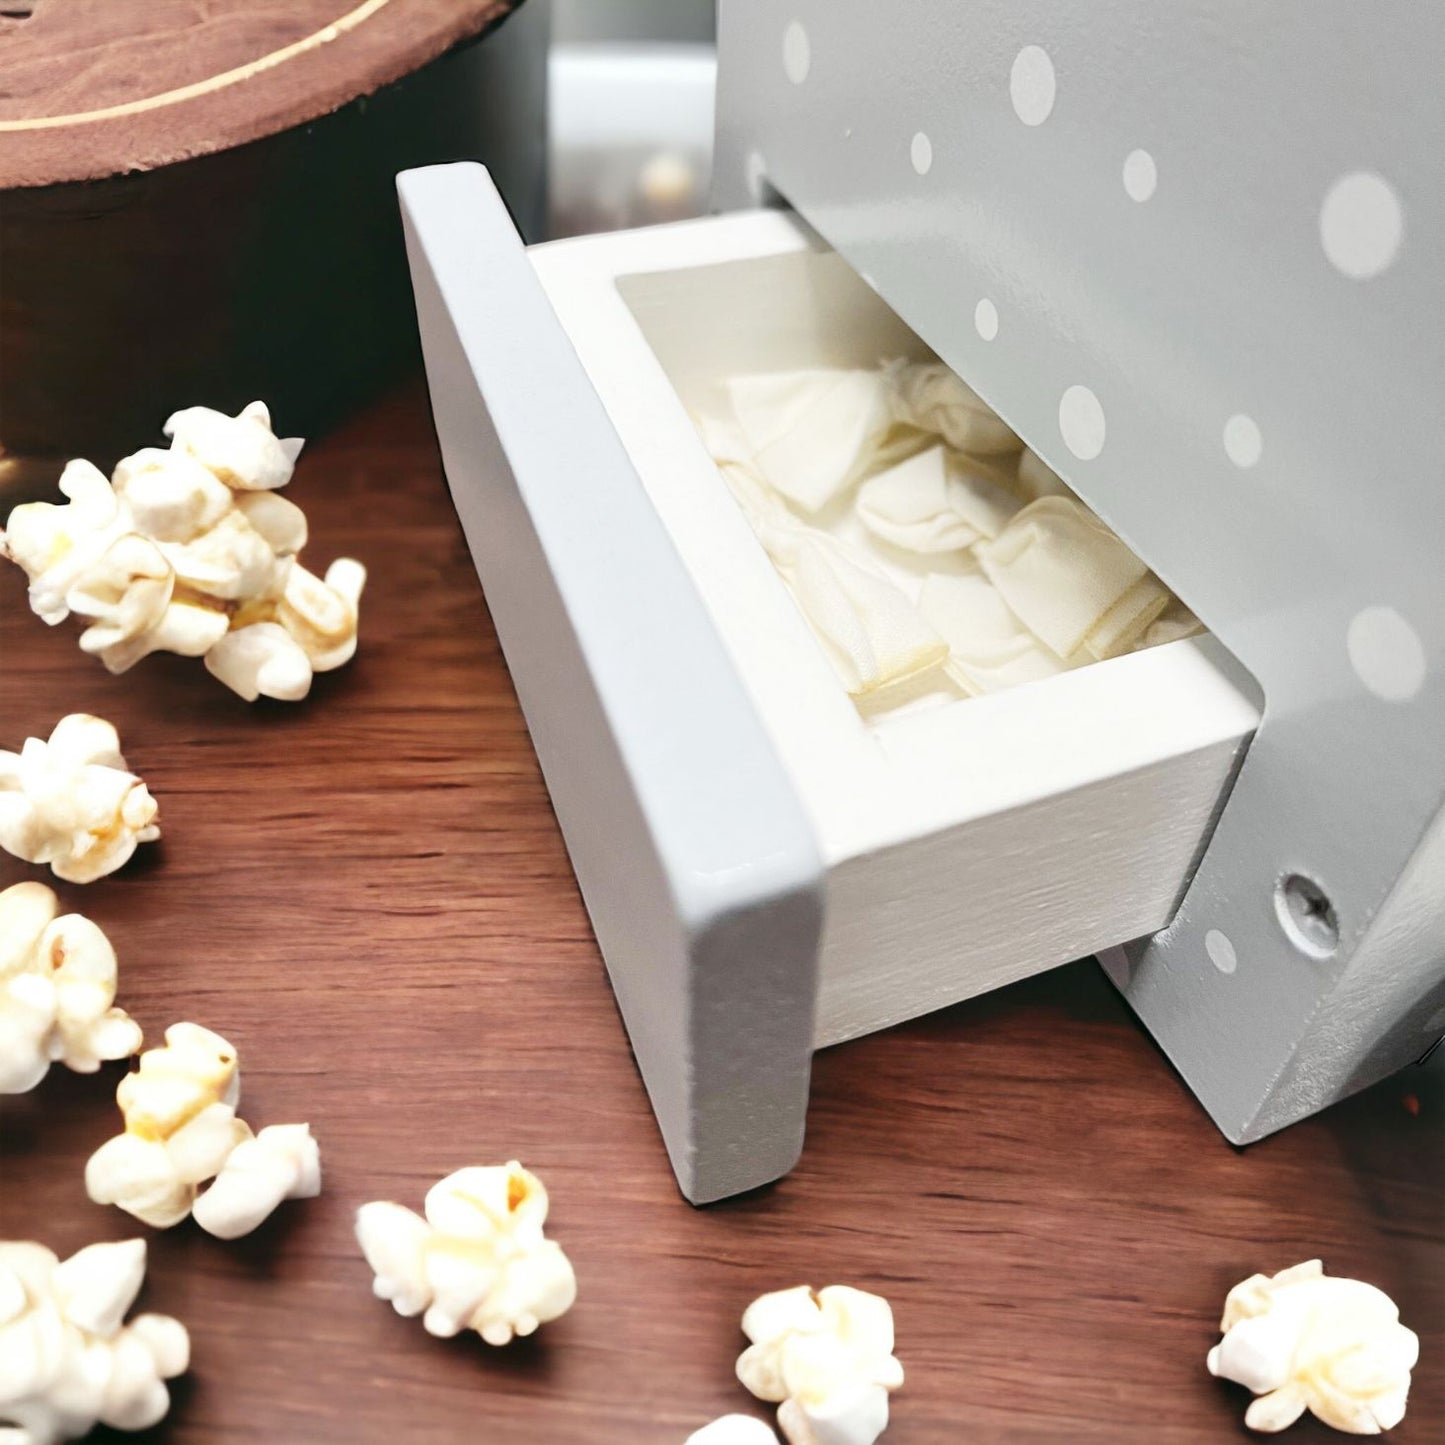 Cucino Wooden Popcorn Machine. Pretend Play Set. Wooden Kitchen Food Toy.